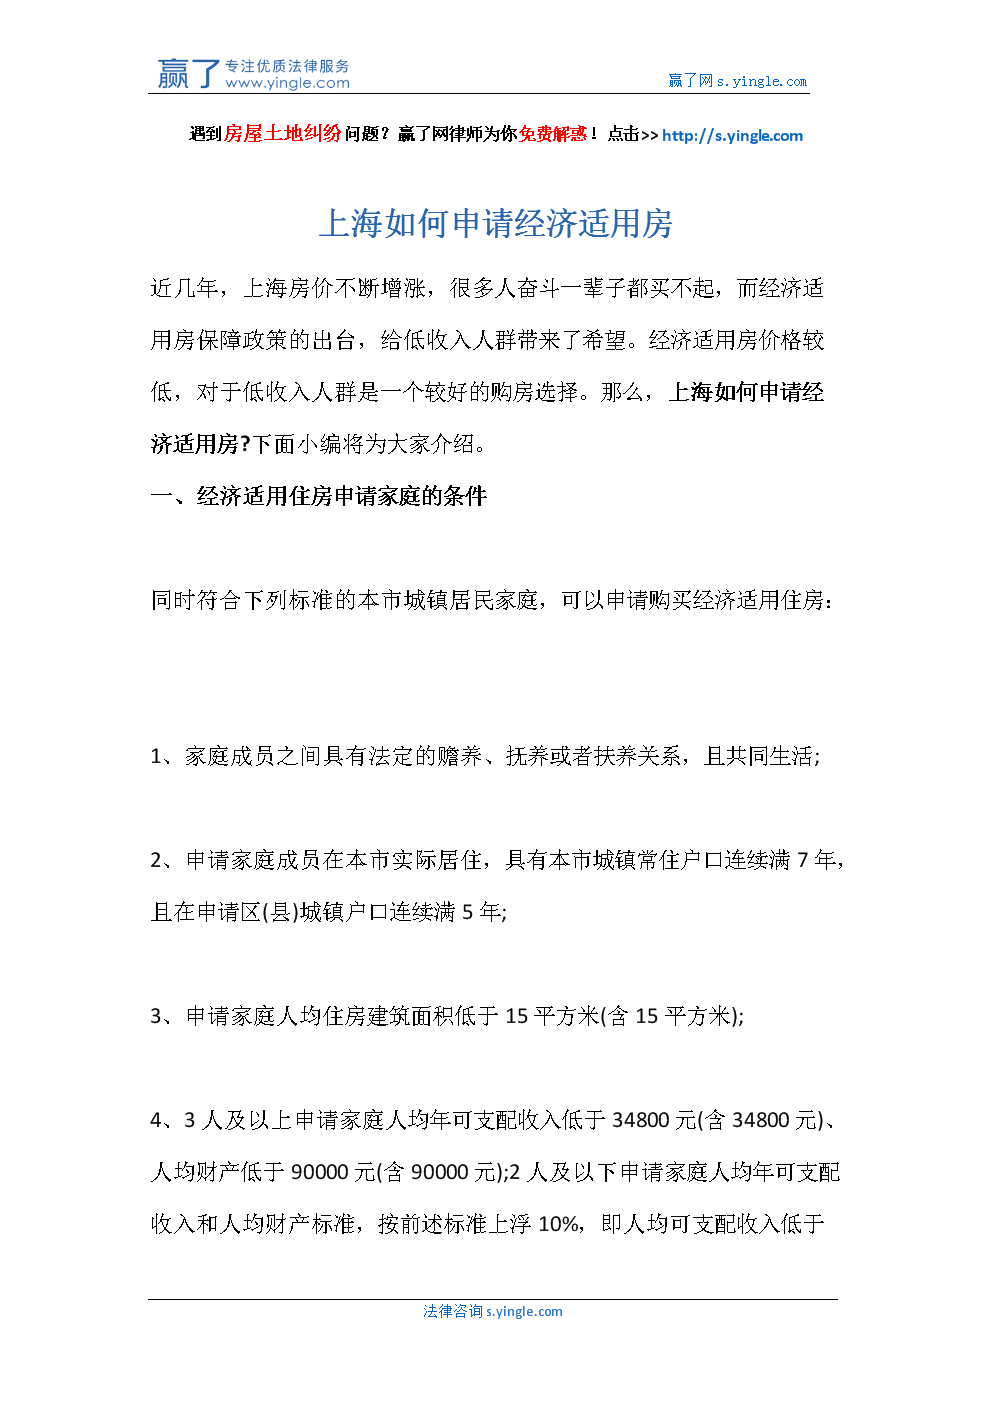 
已解答31379个法律咨询上海宝山区经适房符合条件的市民,申请流程